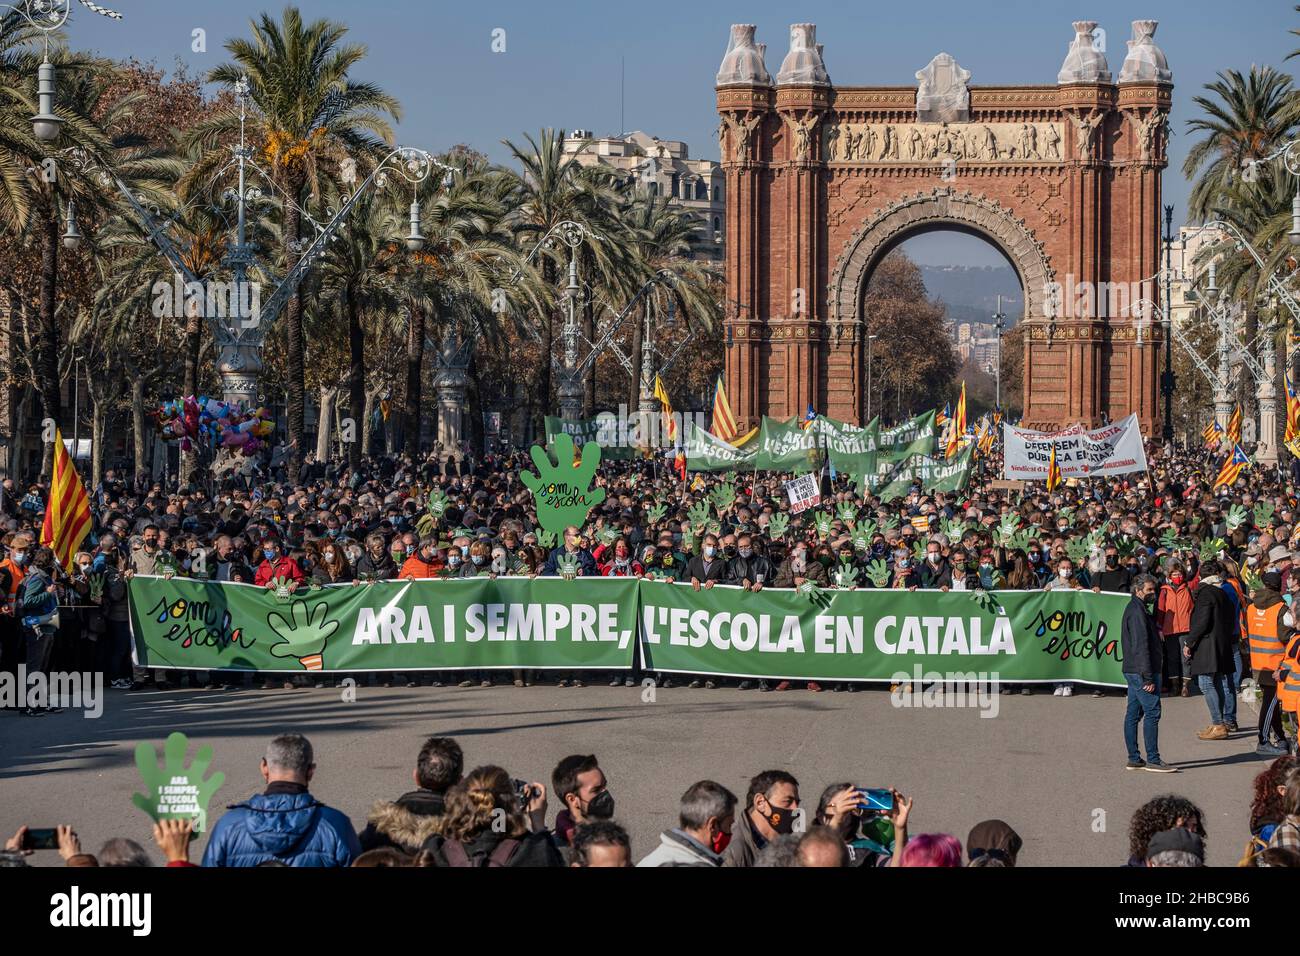 Demonstranten halten während der Demonstration ein Transparent mit dem  Slogan Ara i sempre l,escola en Catalán (Jetzt und immer die Schule auf  Katalanisch). Tausende von Menschen haben im Zentrum von Barcelona  demonstriert,